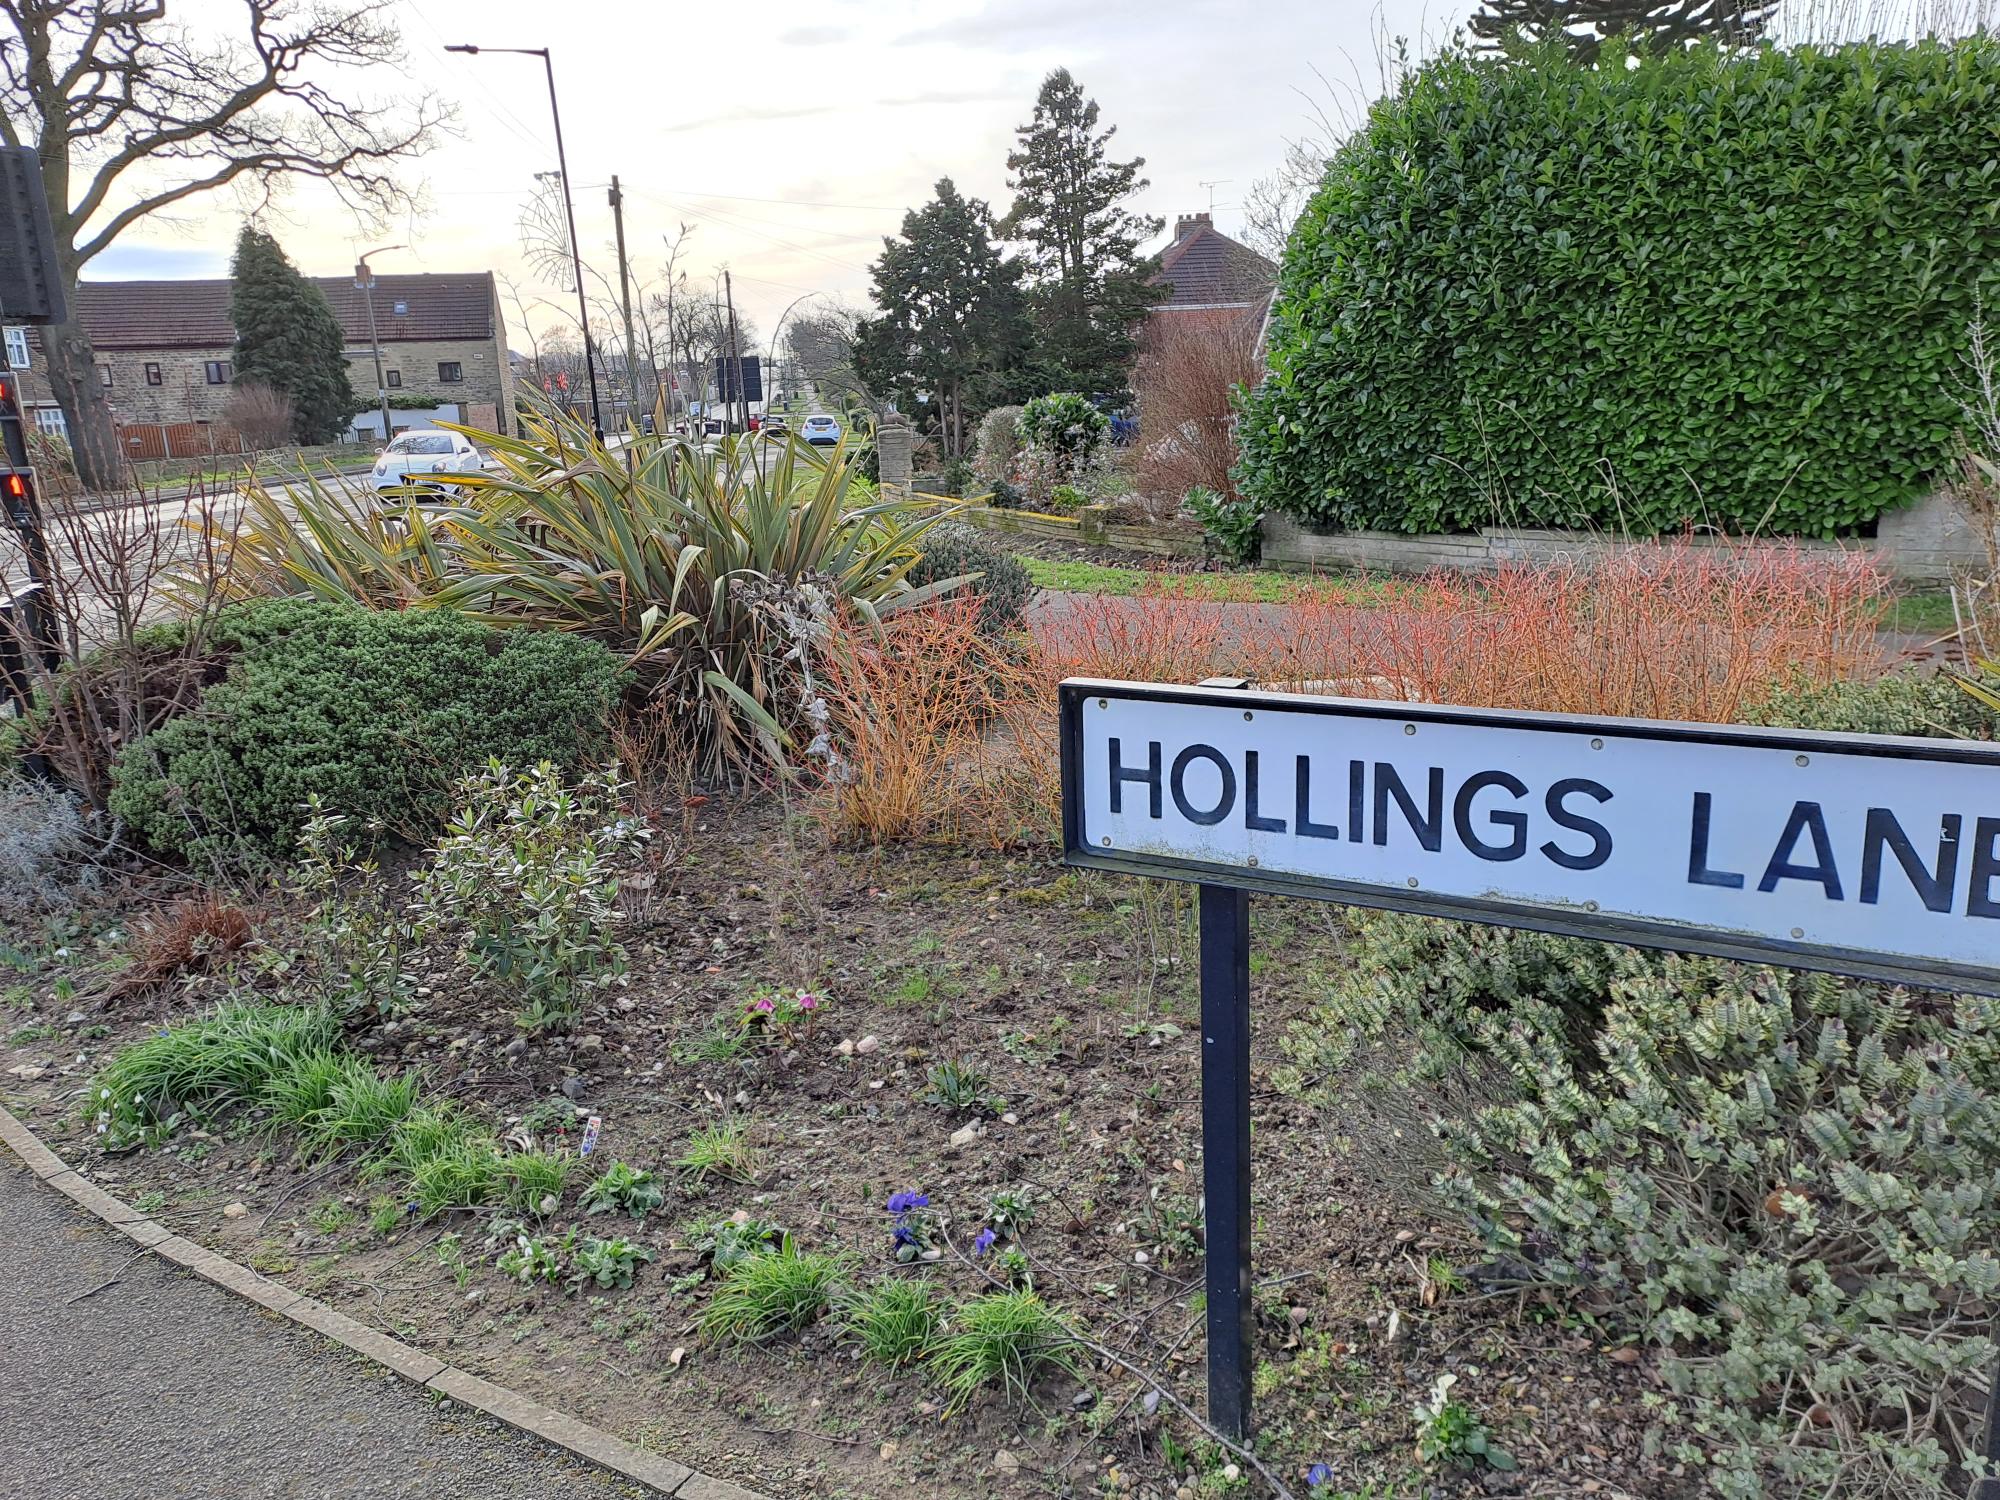 Hollings lane sign